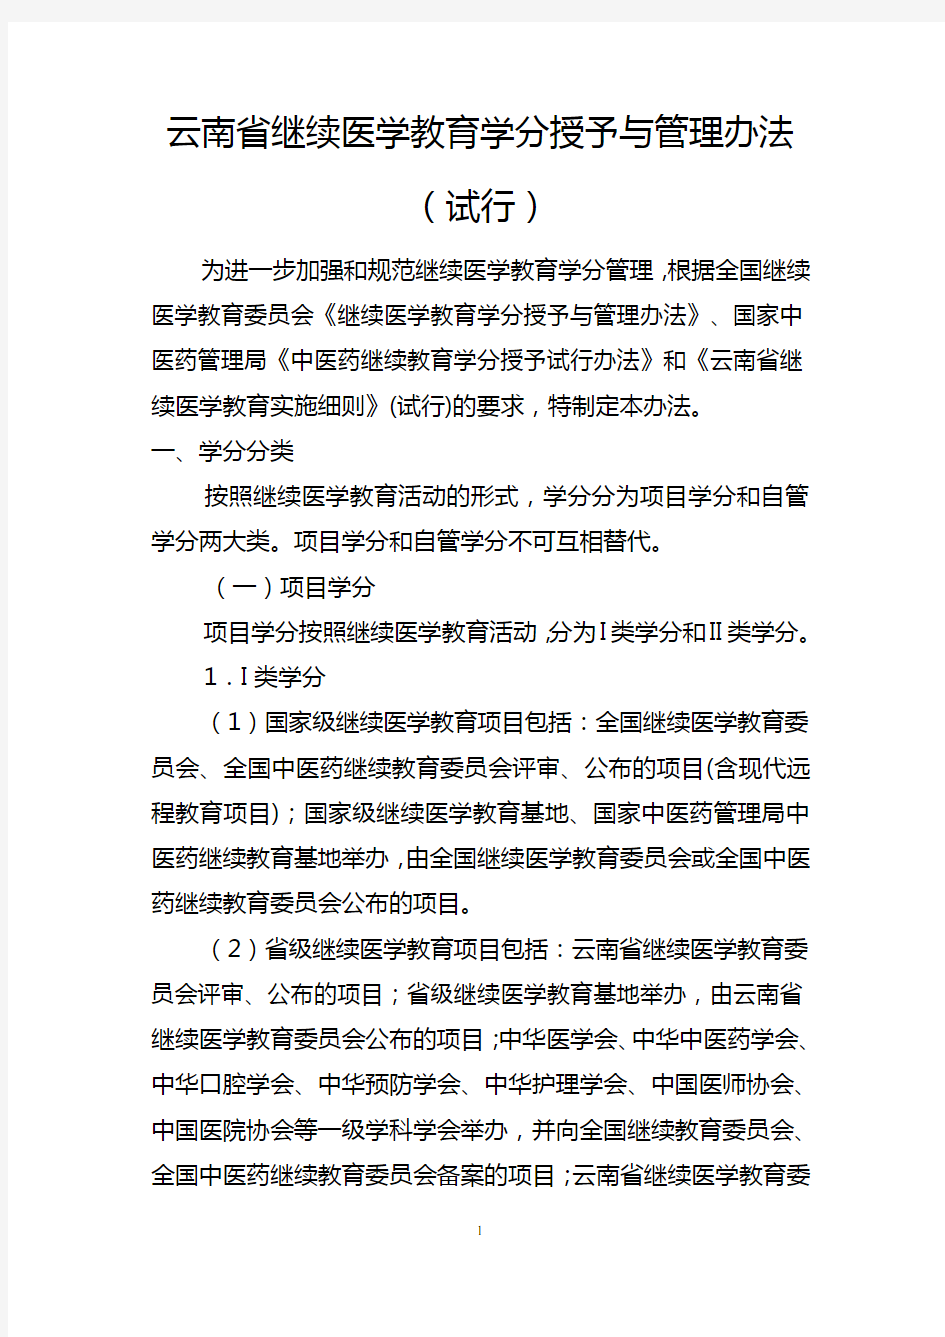 云南省继续医学教育学分授予与管理办法(试行)